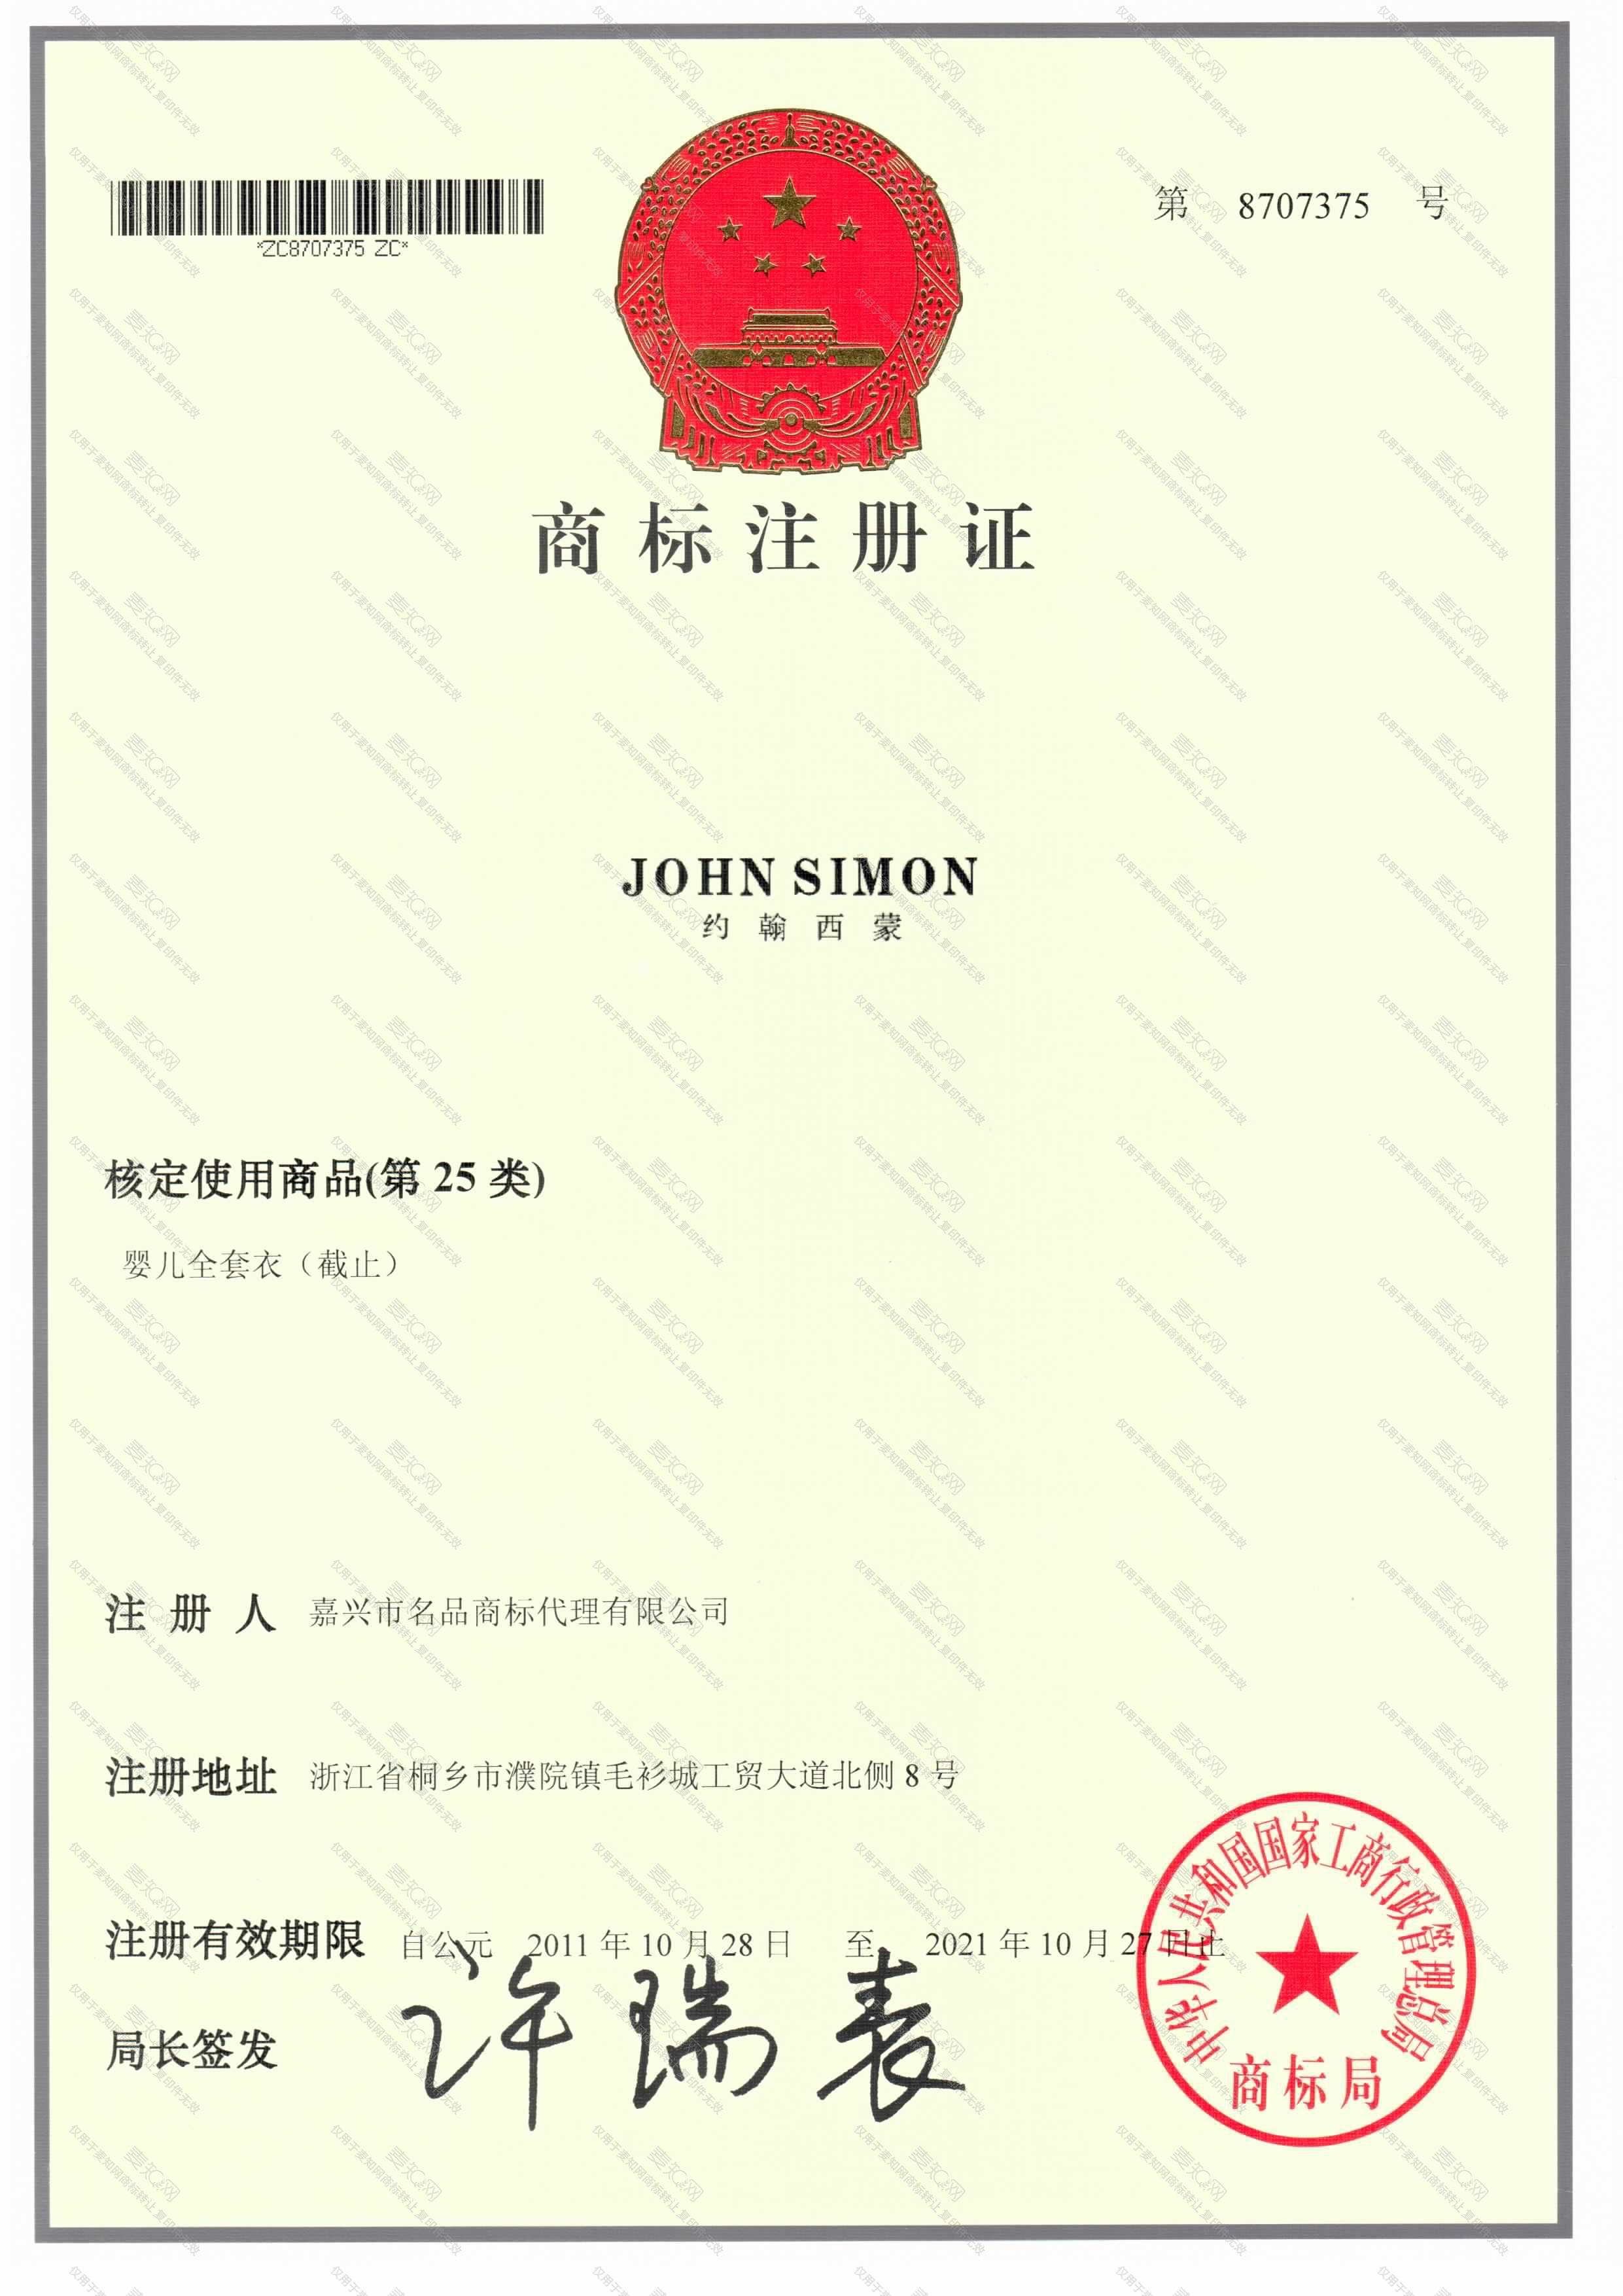 约翰西蒙 JOHN SIMON注册证